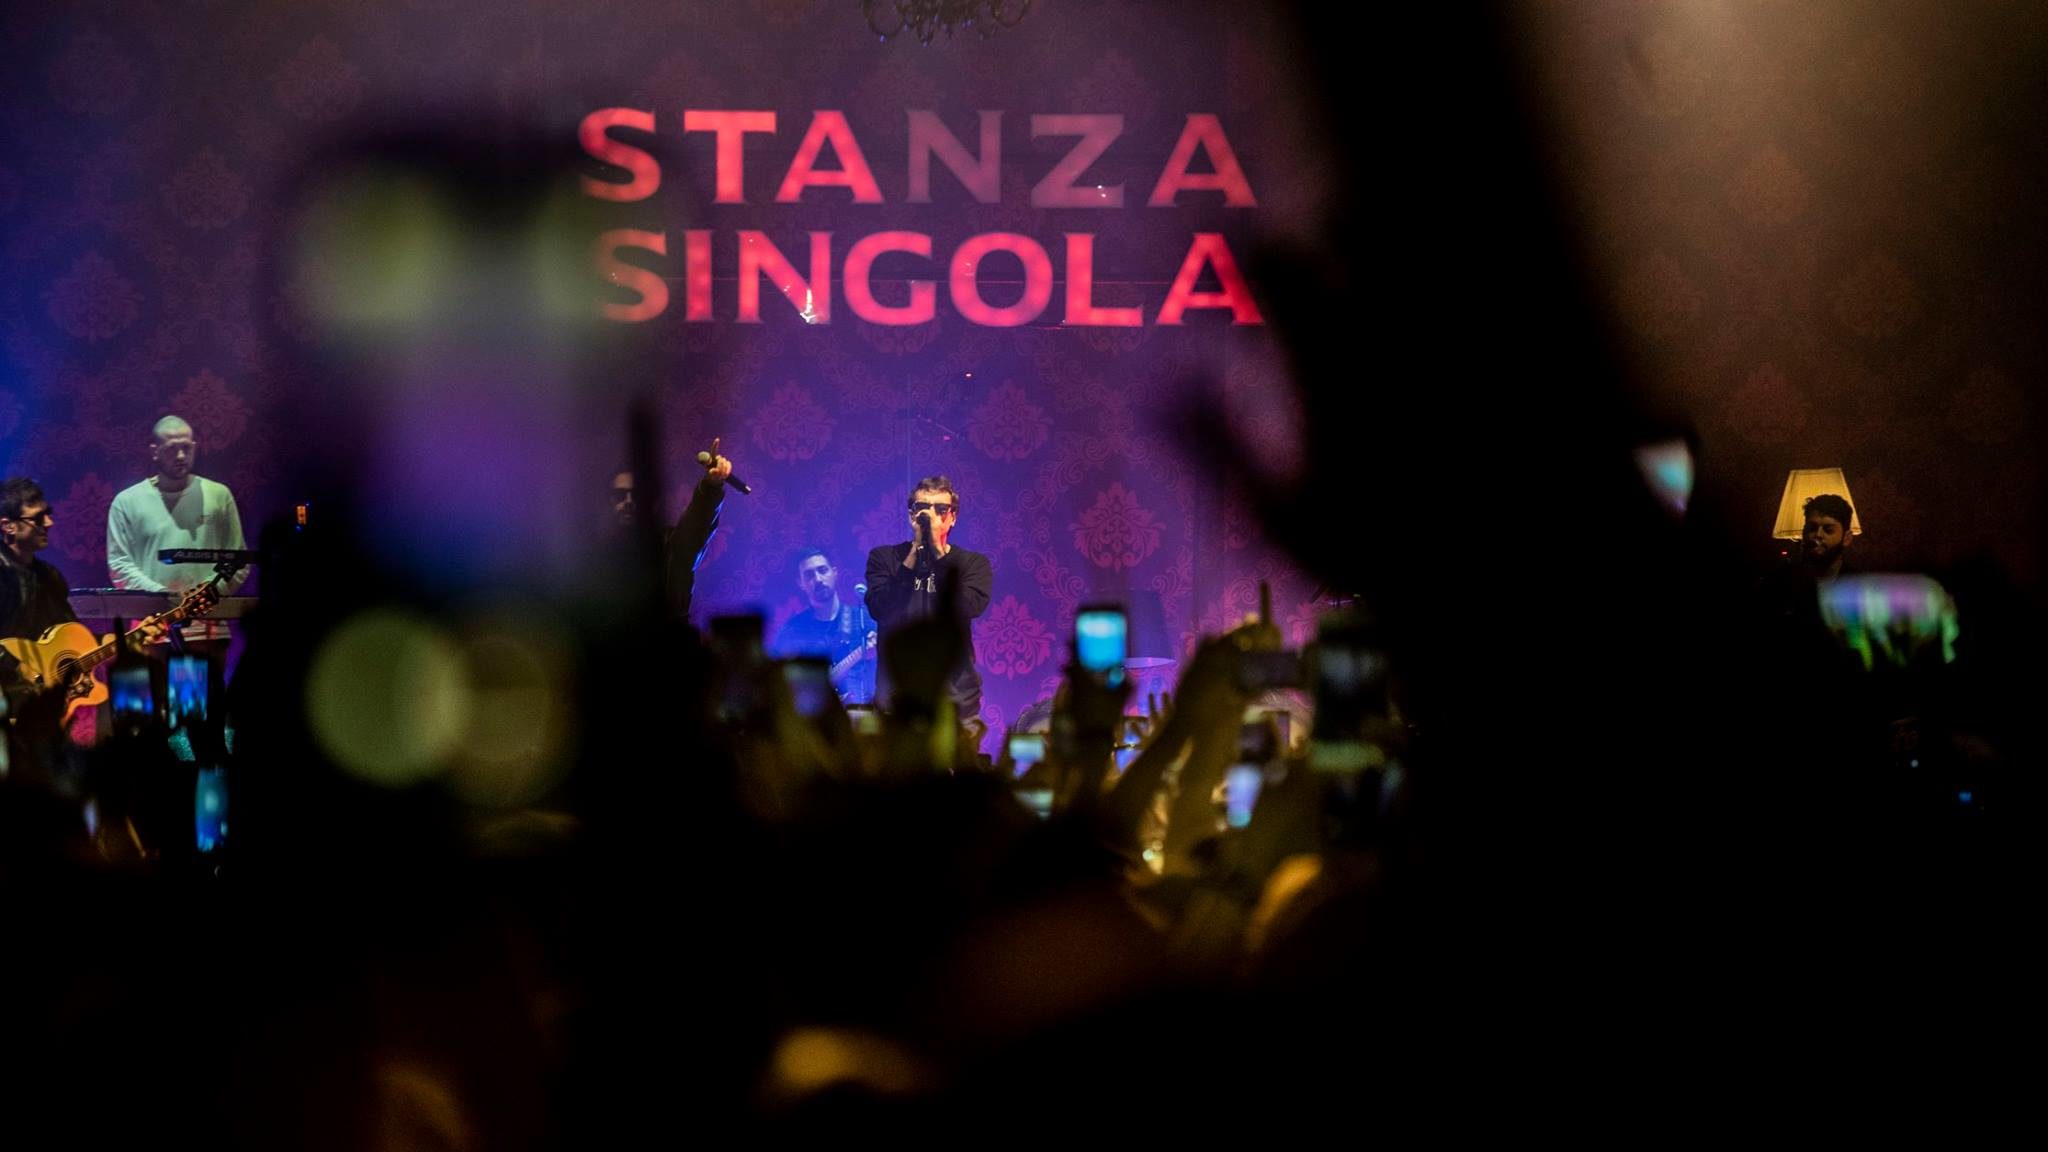 Franco 126 - Stanza Singola Tour (da Facebook)